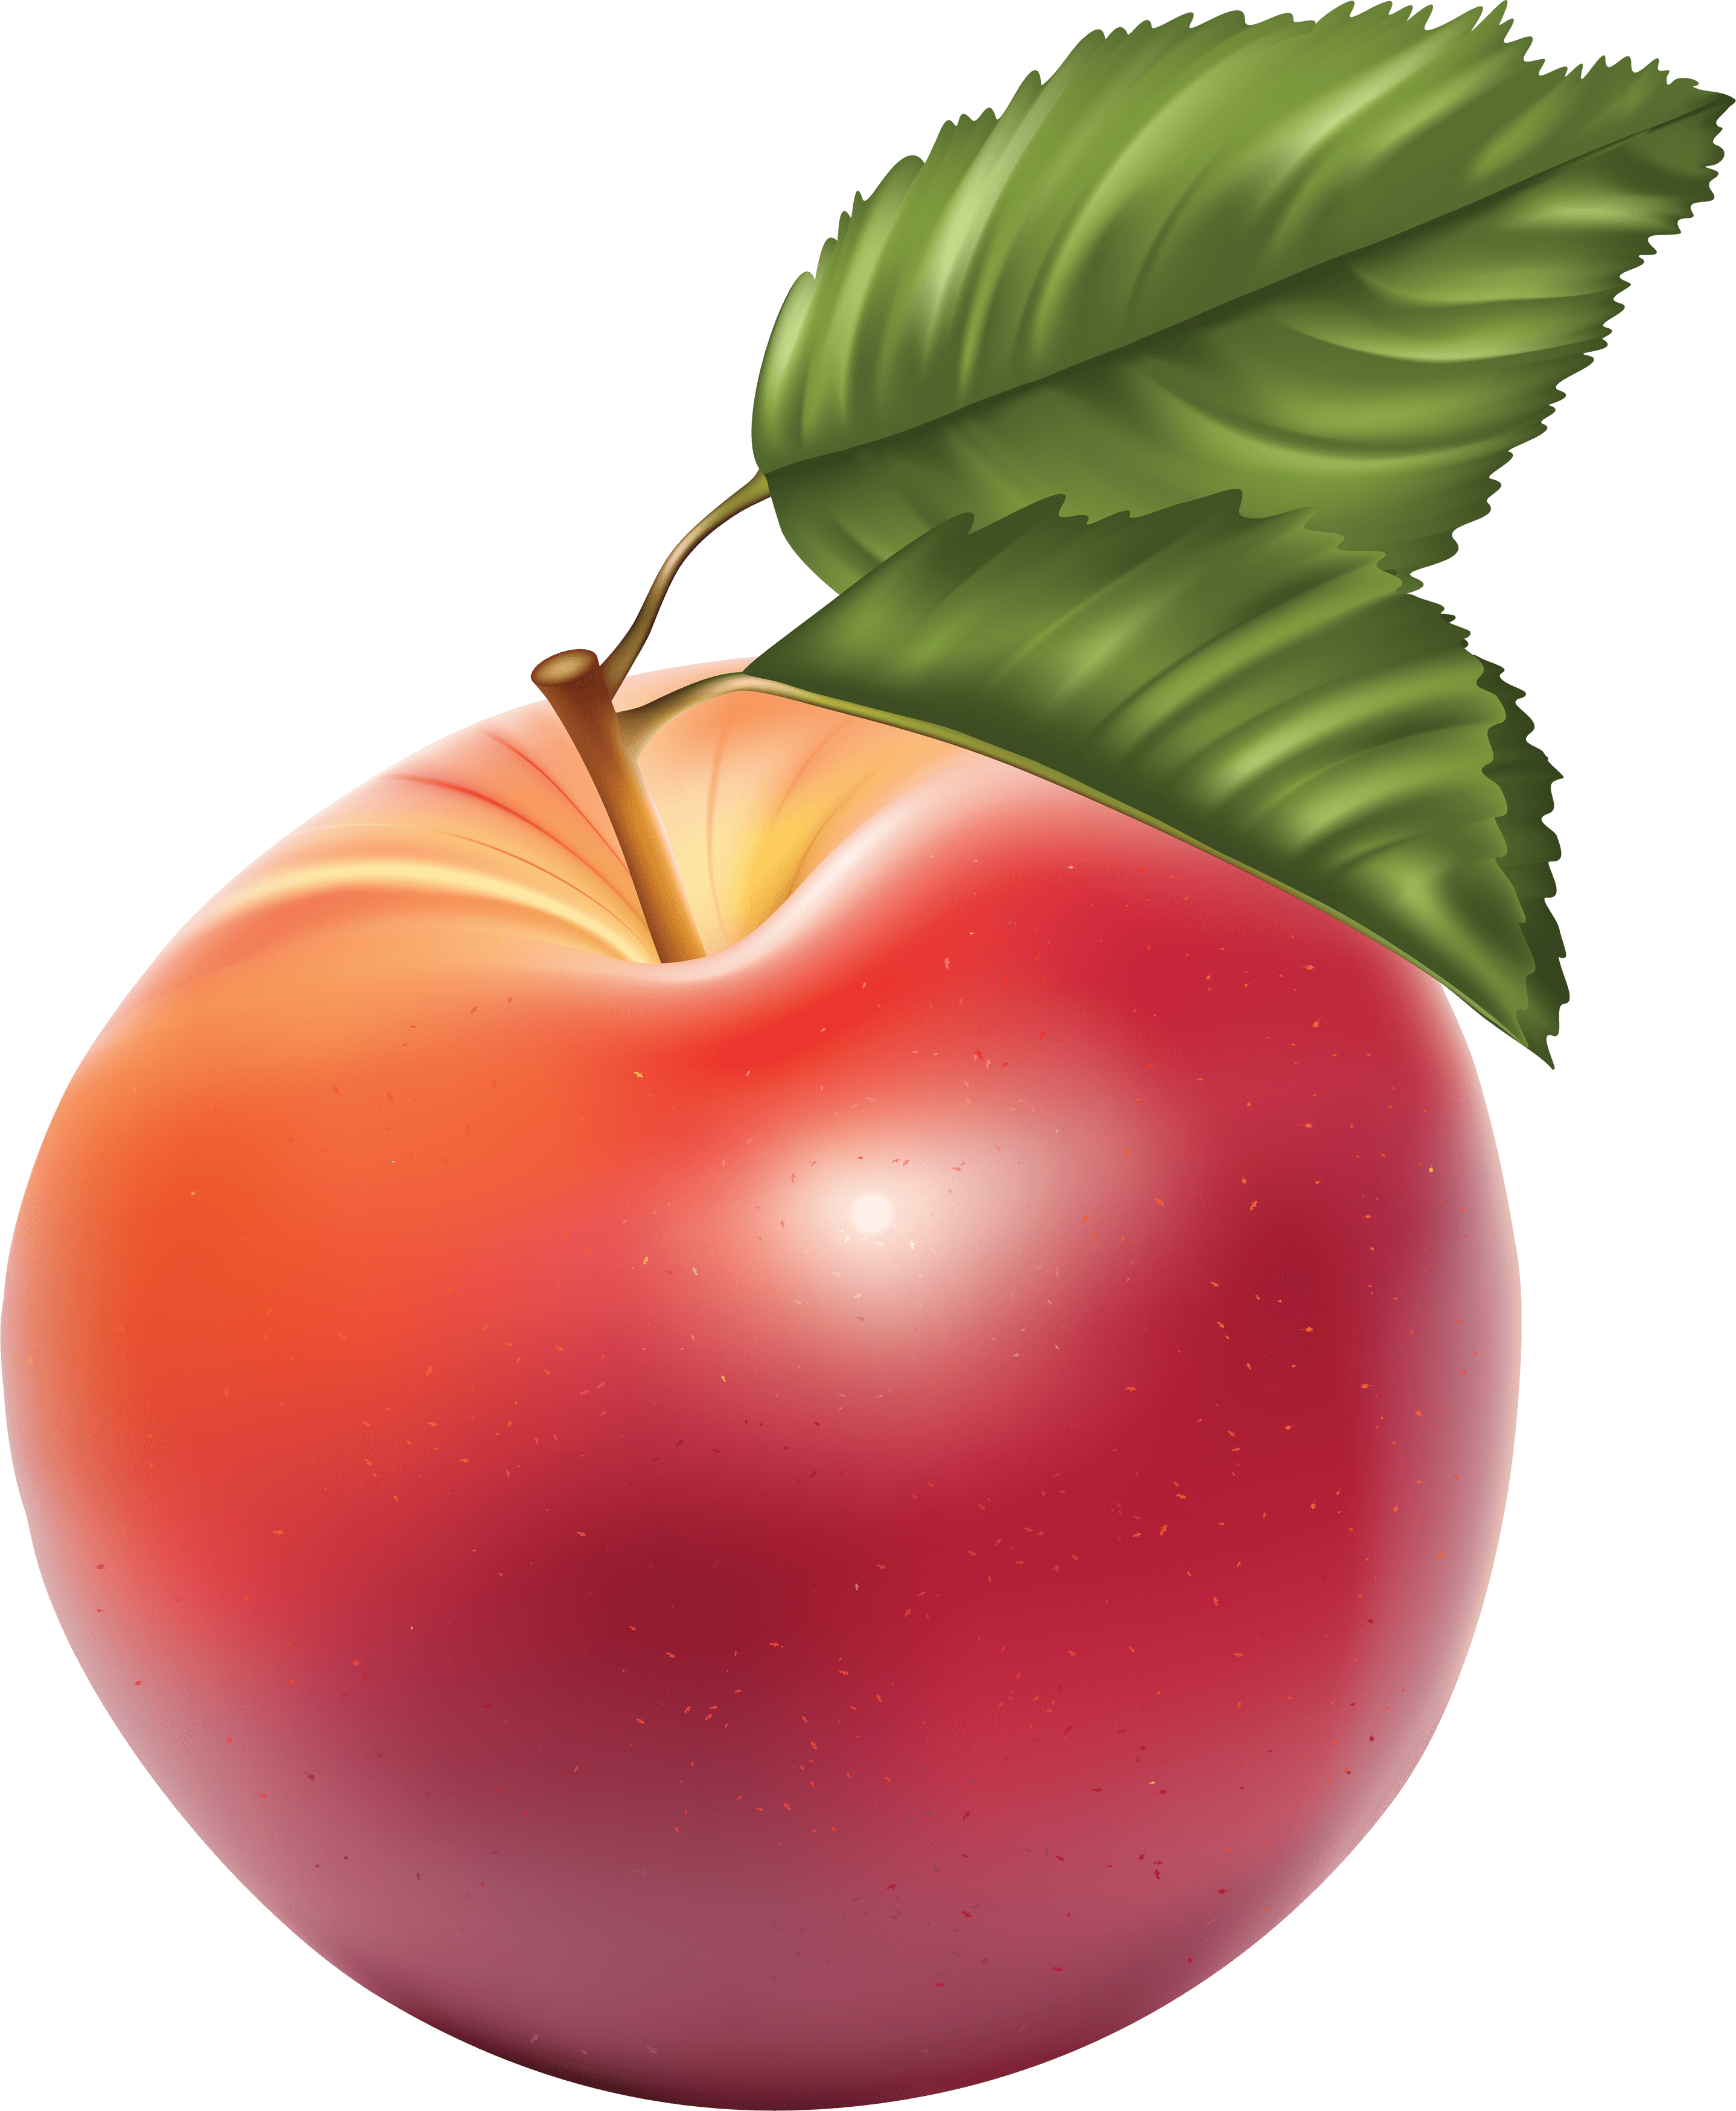 Apple Fruit Clip Art Png Apple Image Clipart Transparent Png Apple